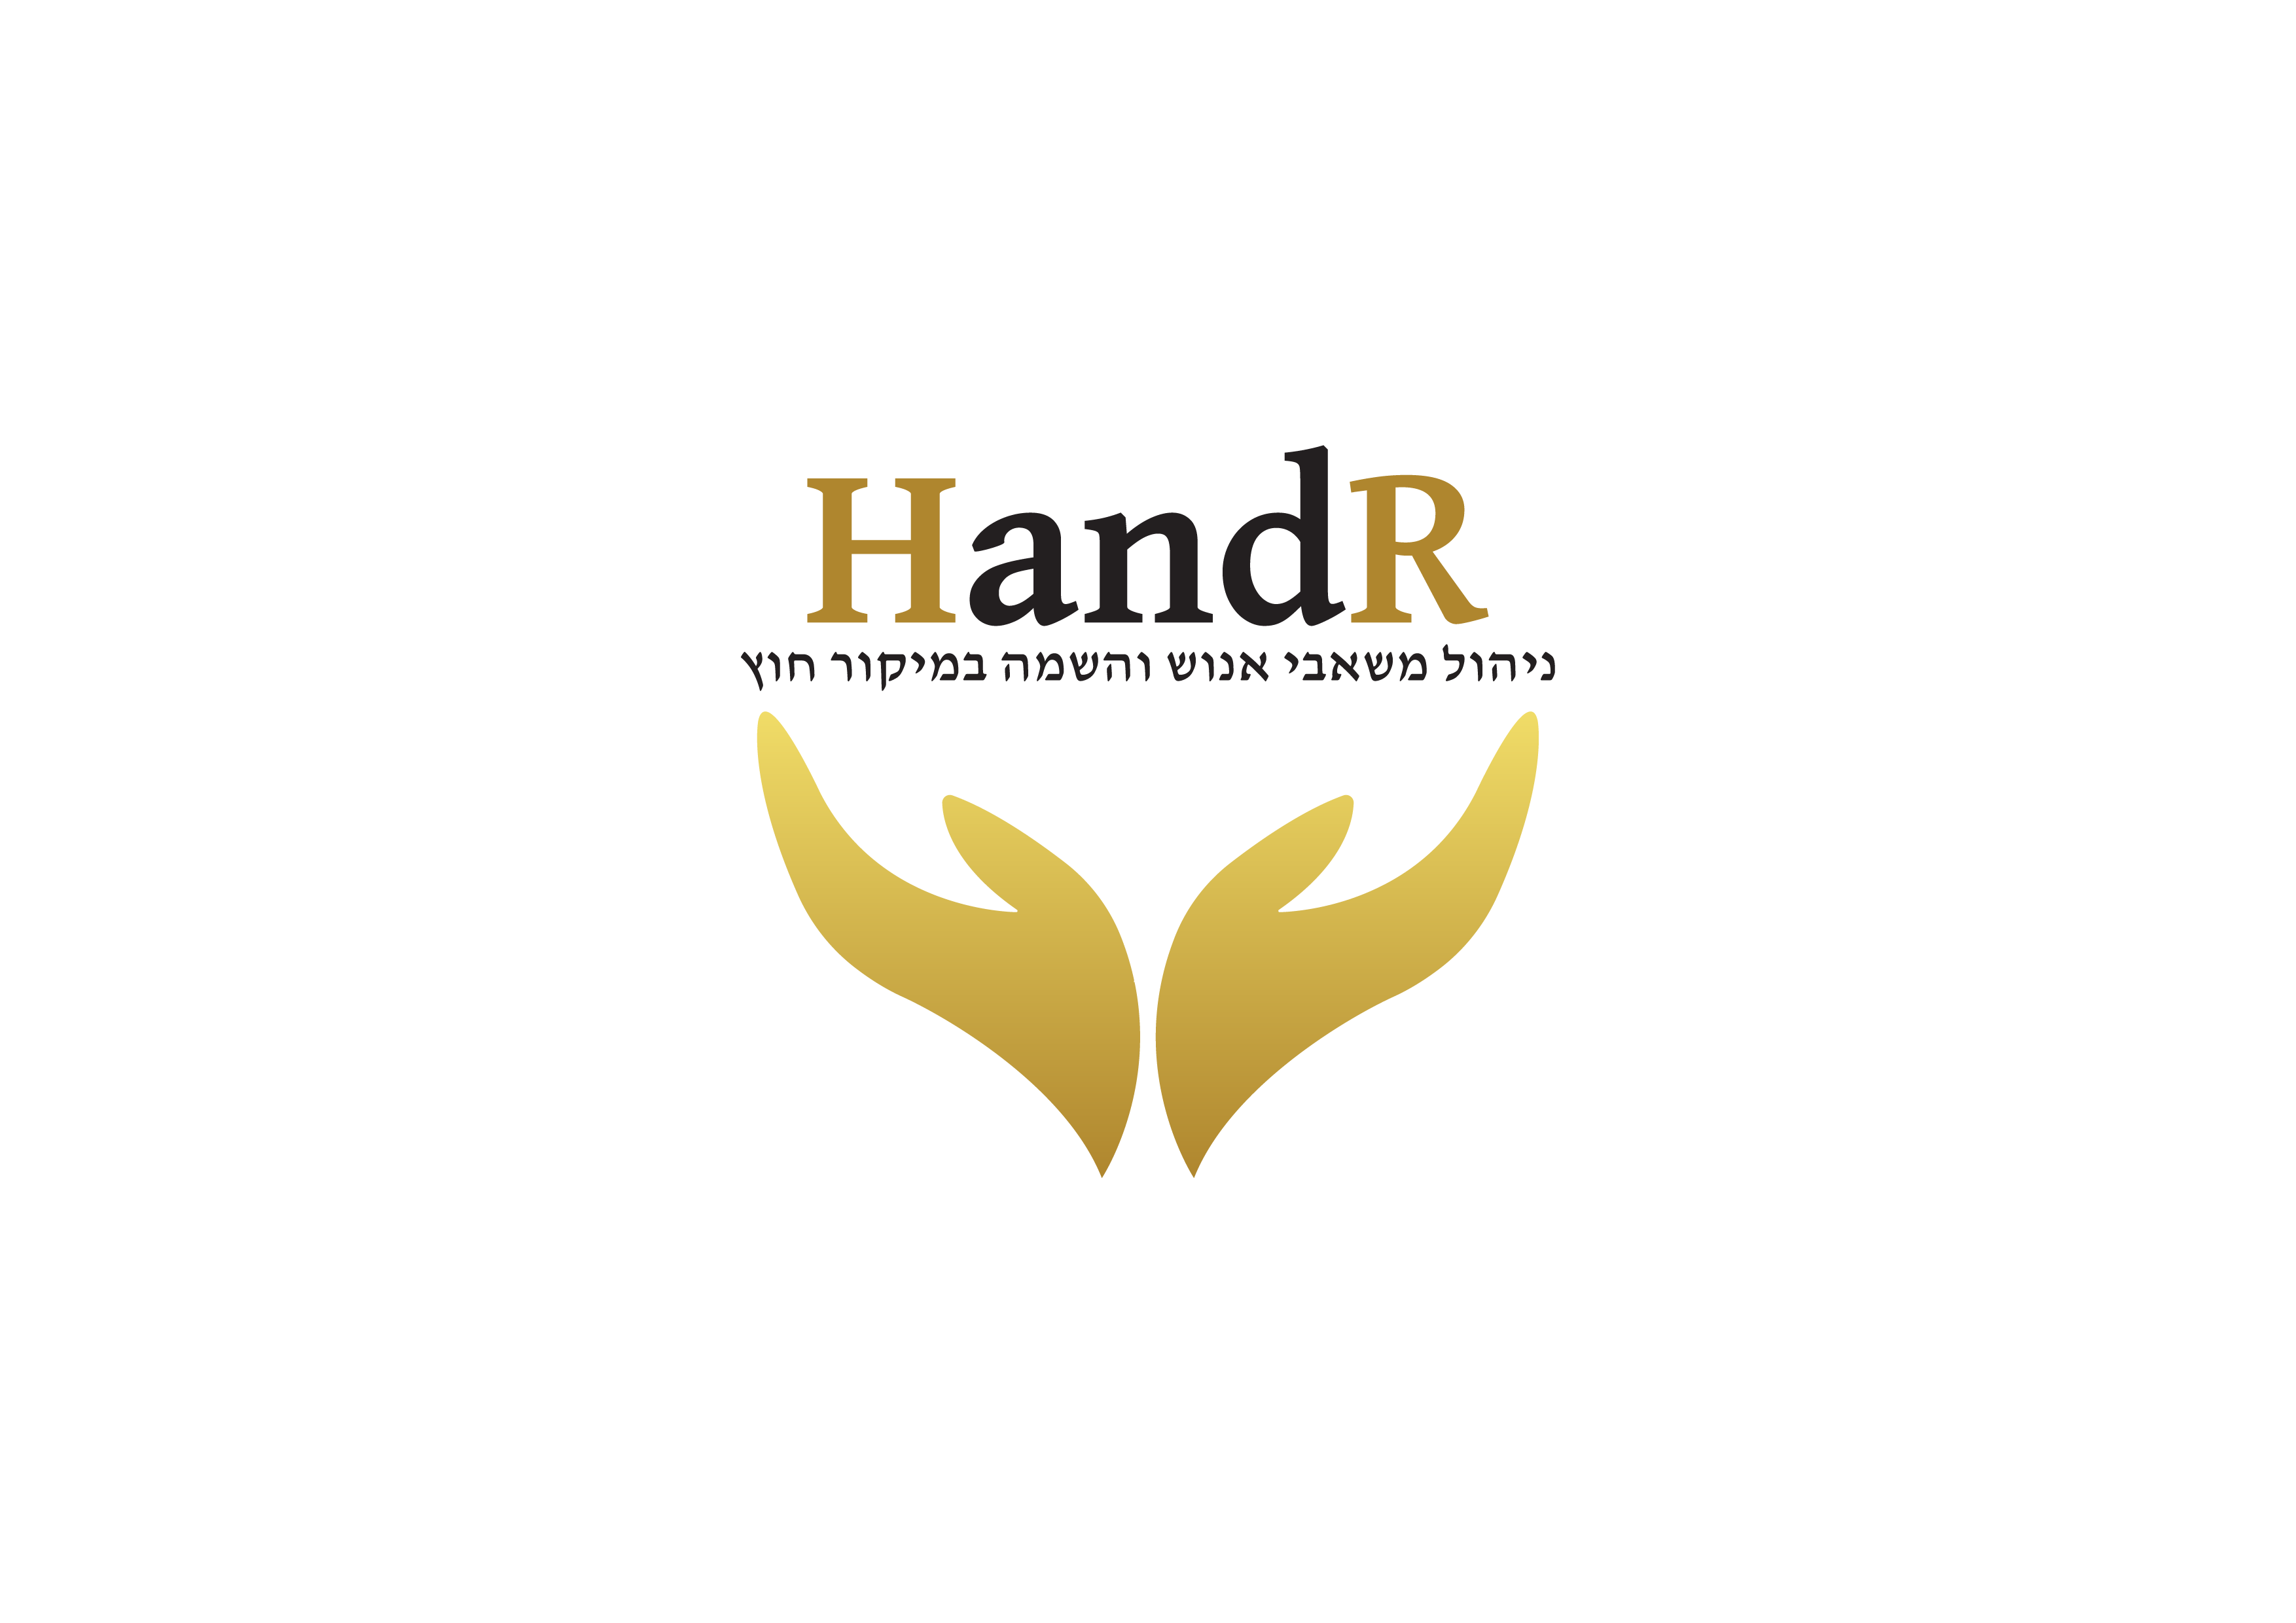 HandR- שירותי משאבי אנוש והשמה במיקור חוץ